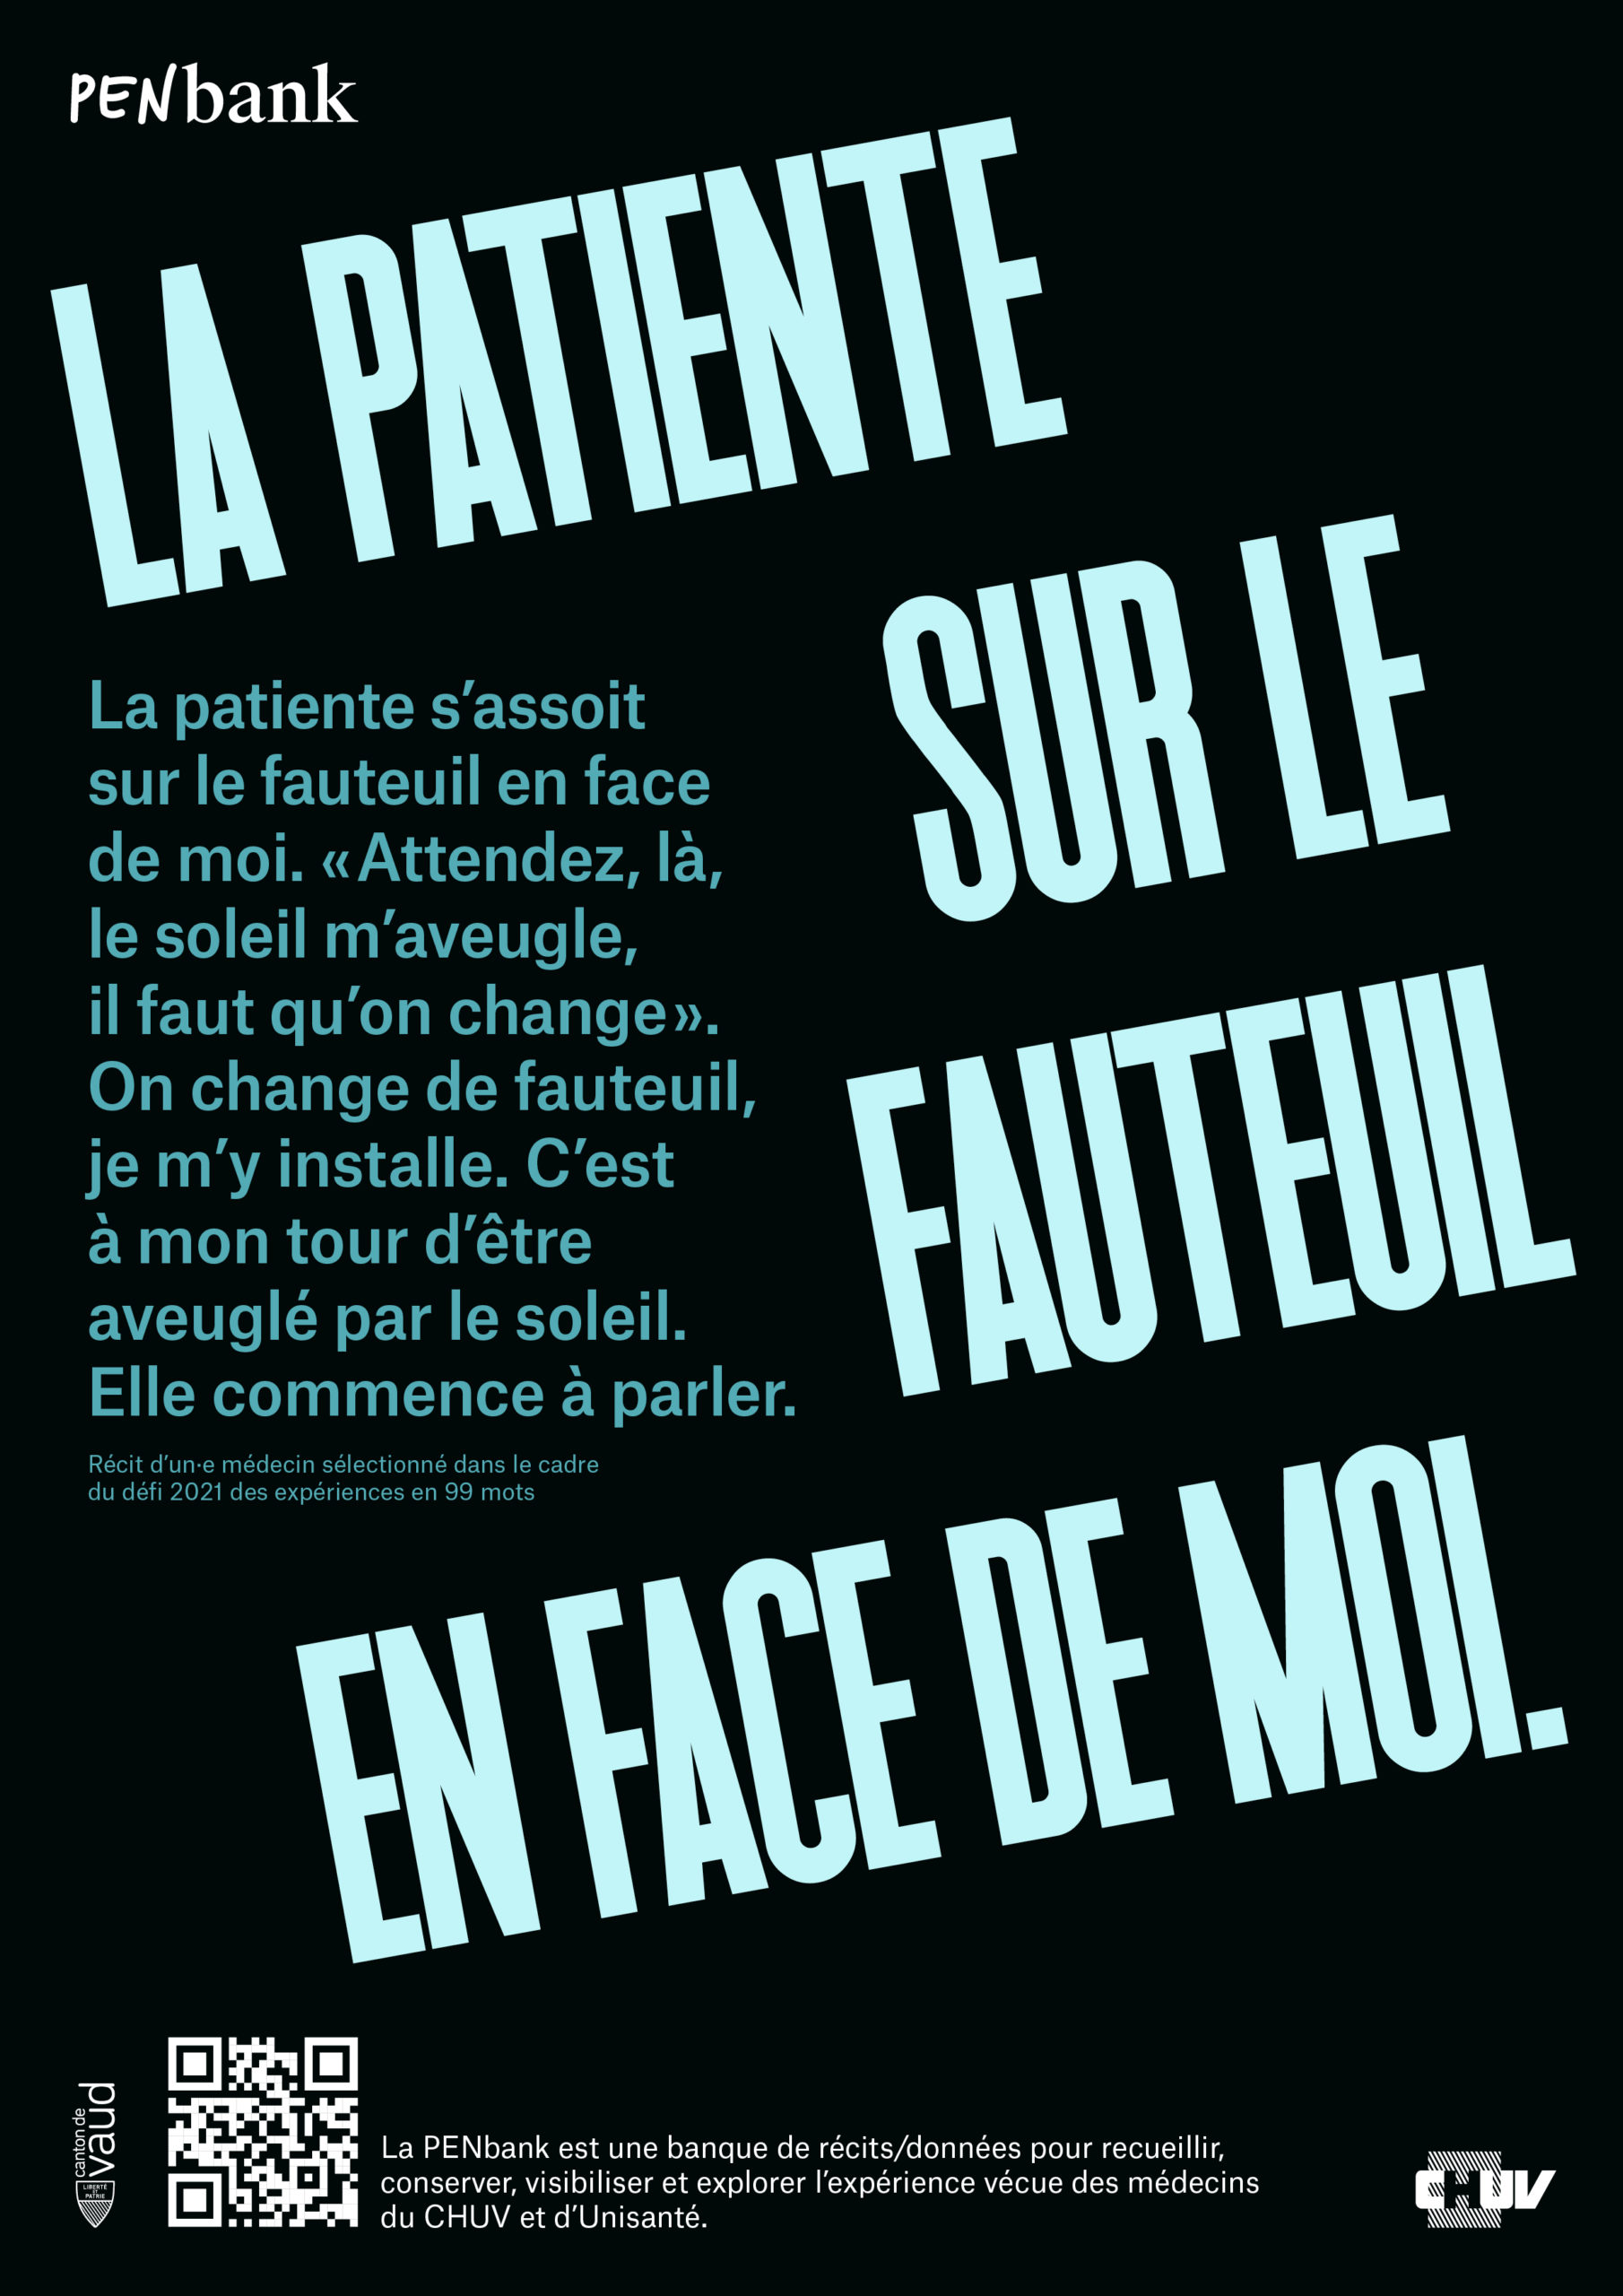 affiche graphique pour PENbank avec exergue "La patiente sur le fauteuil en face de moi"